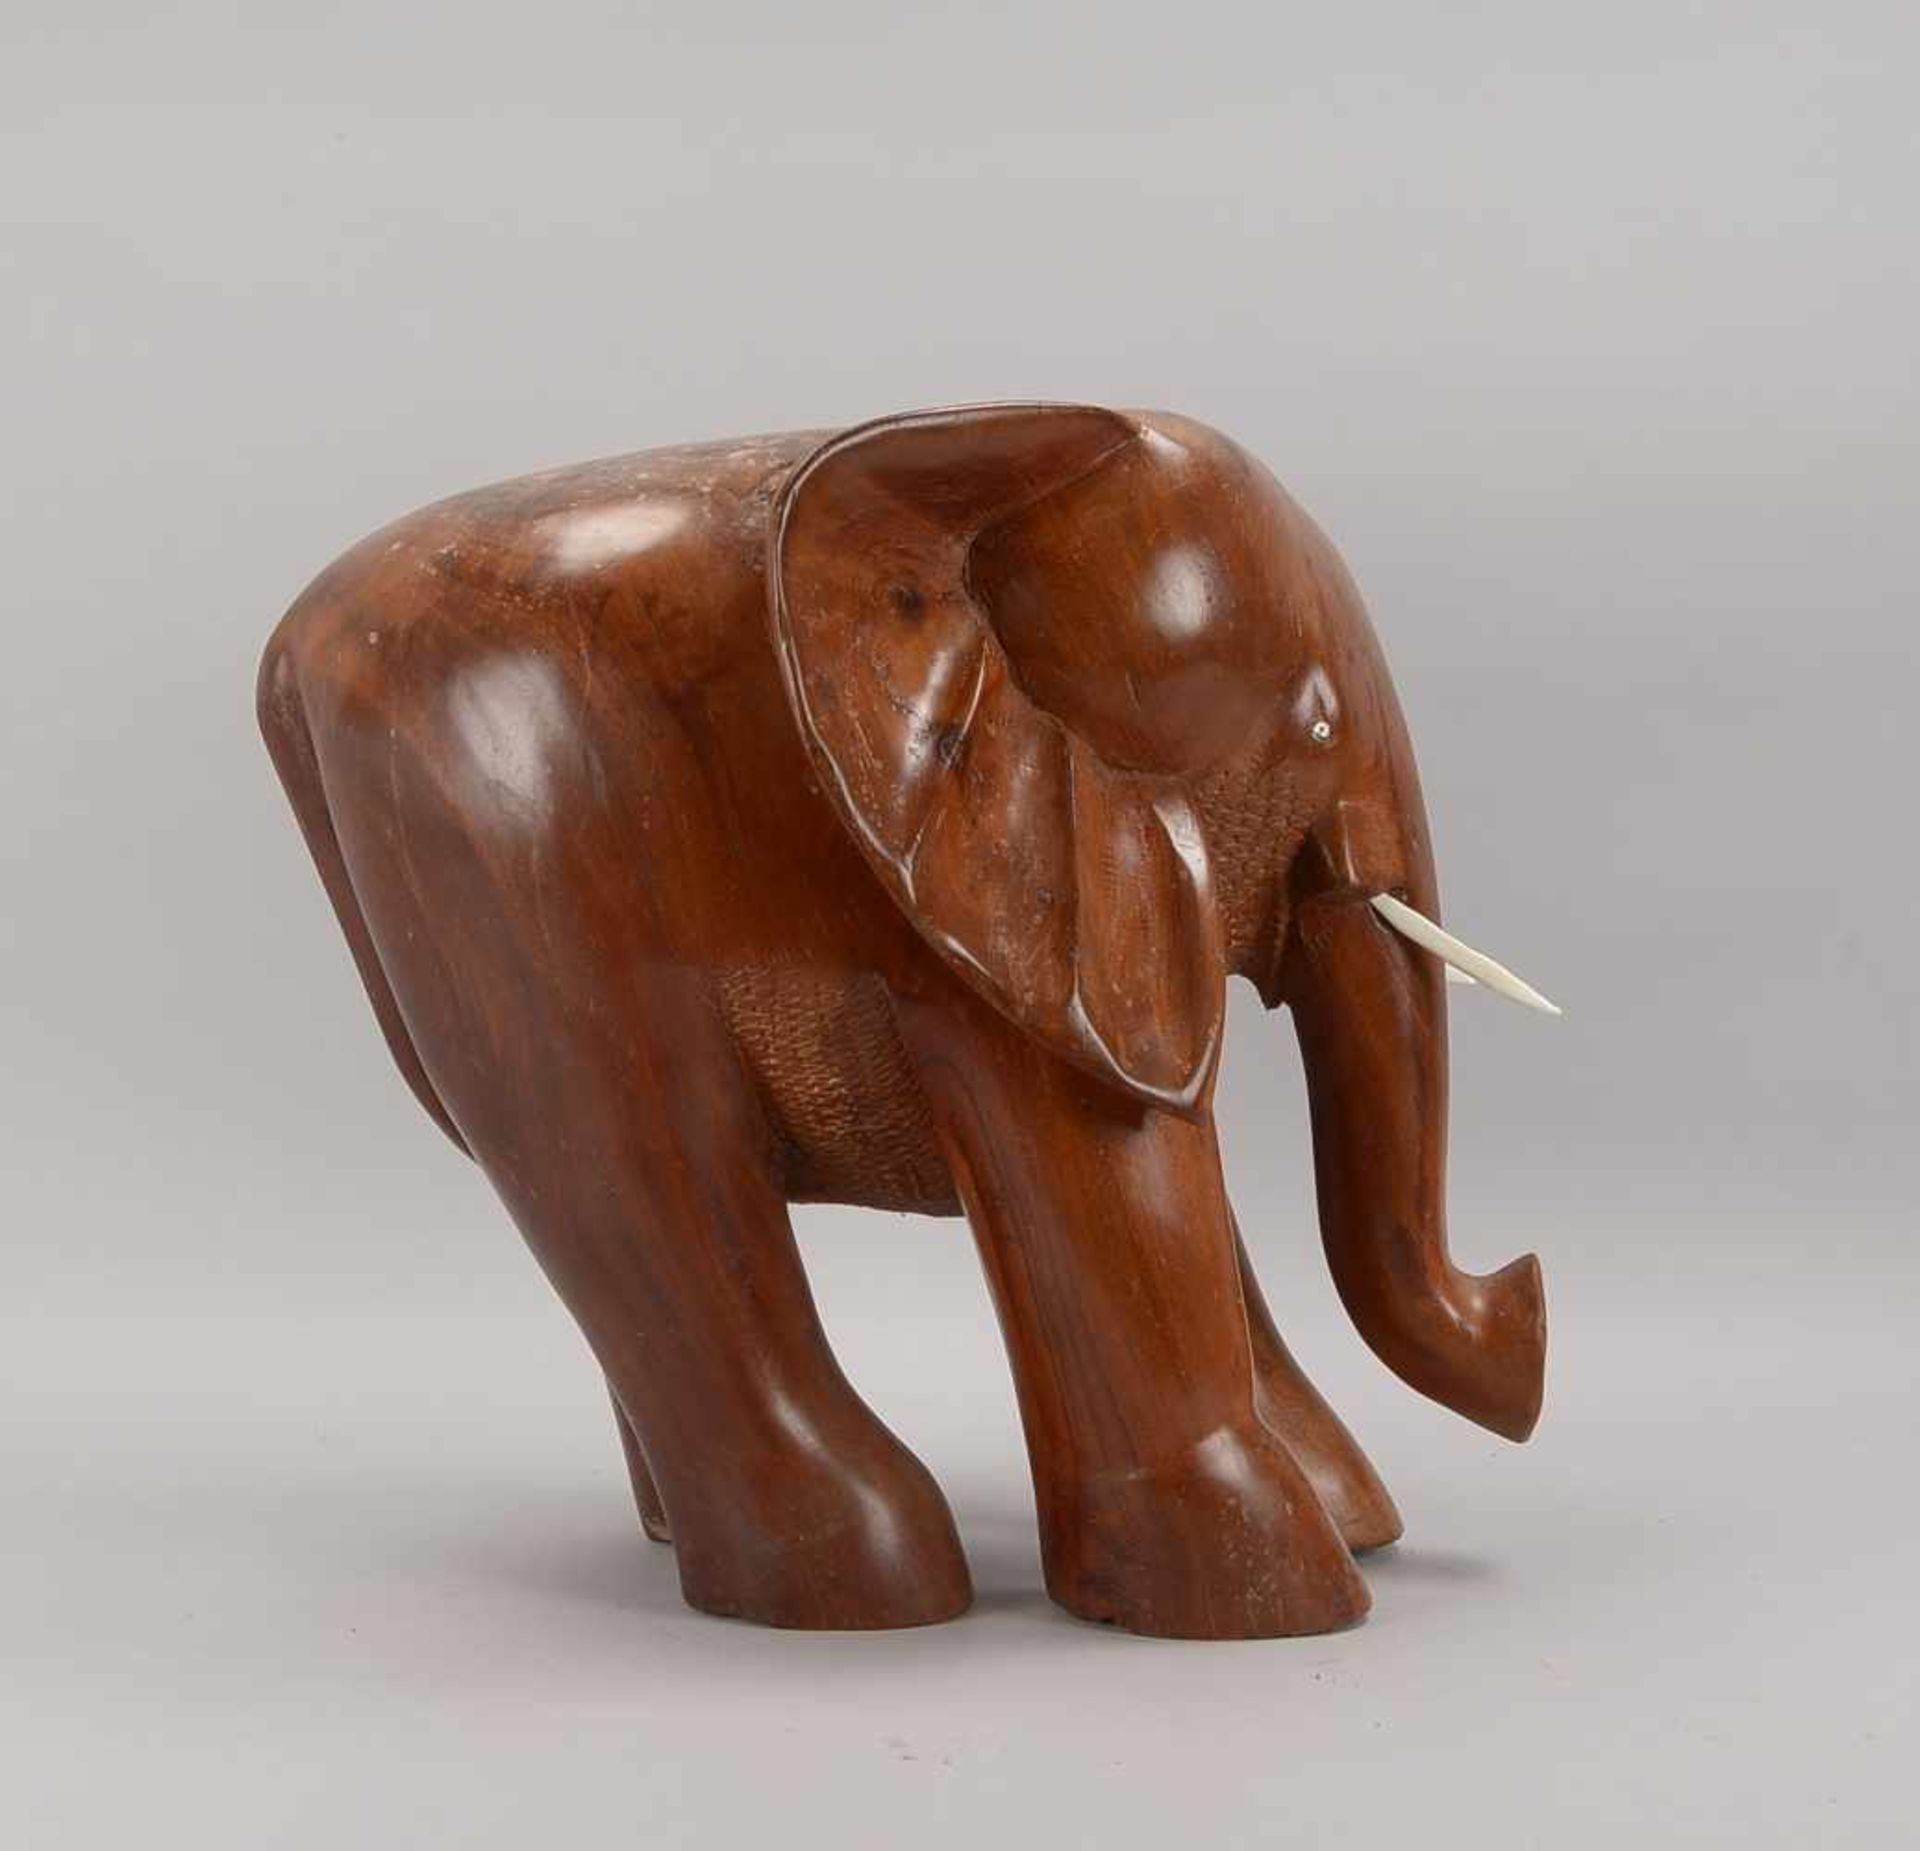 Holzskulptur, 'Elefant', Nigeria, wohl Mahagoniholz, Stoßzähne aus Bein; Höhe 55 cm (Figur mit